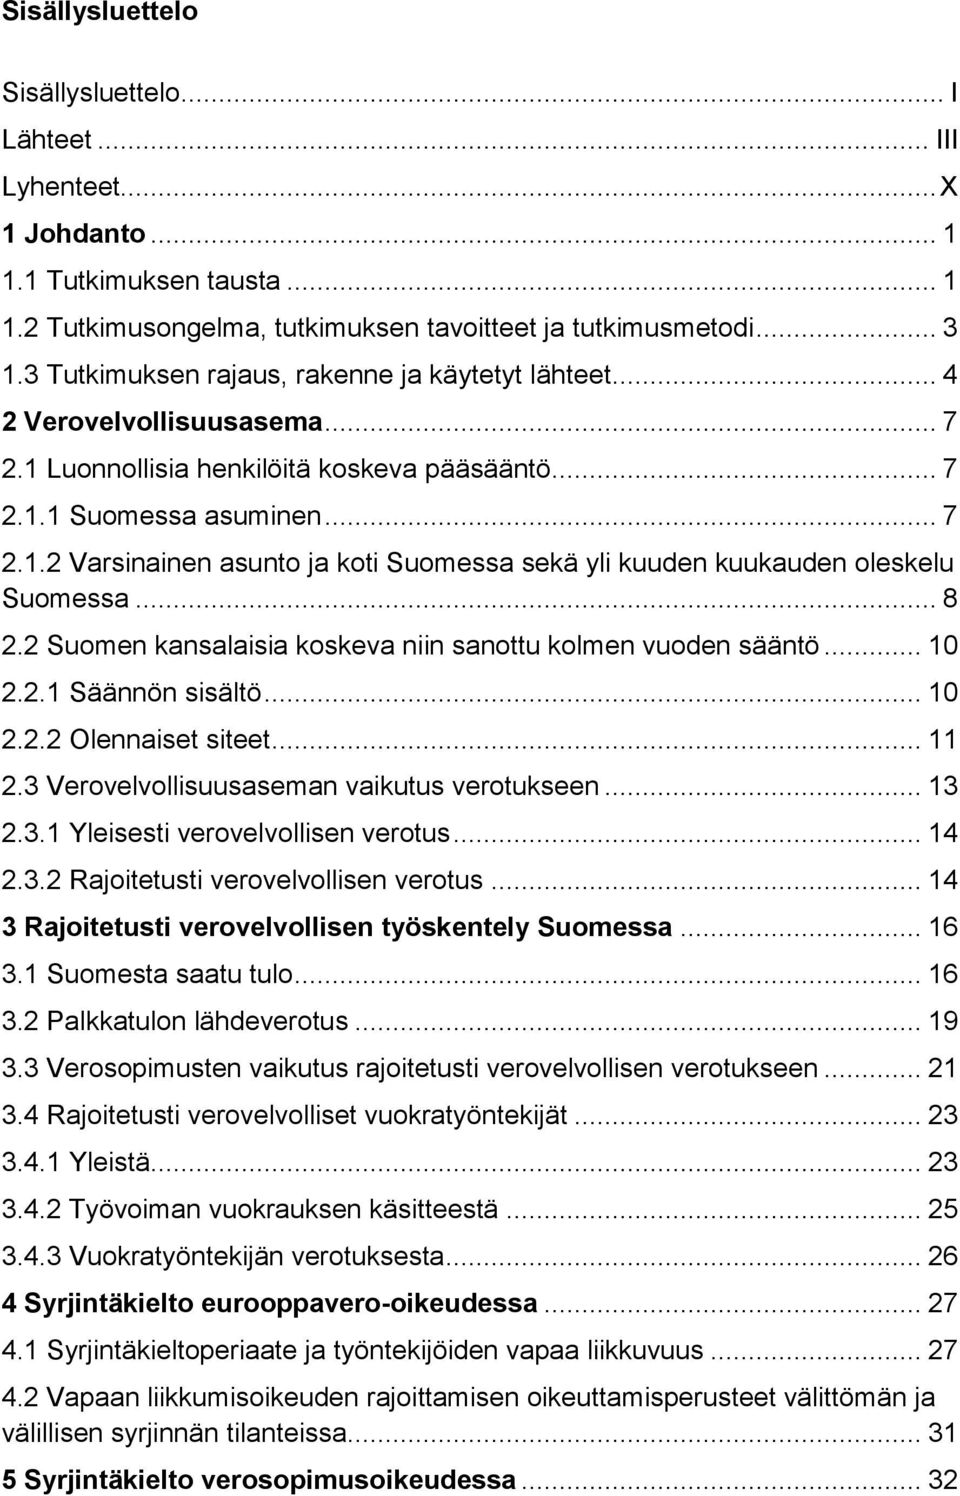 .. 8 2.2 Suomen kansalaisia koskeva niin sanottu kolmen vuoden sääntö... 10 2.2.1 Säännön sisältö... 10 2.2.2 Olennaiset siteet... 11 2.3 Verovelvollisuusaseman vaikutus verotukseen... 13 2.3.1 Yleisesti verovelvollisen verotus.